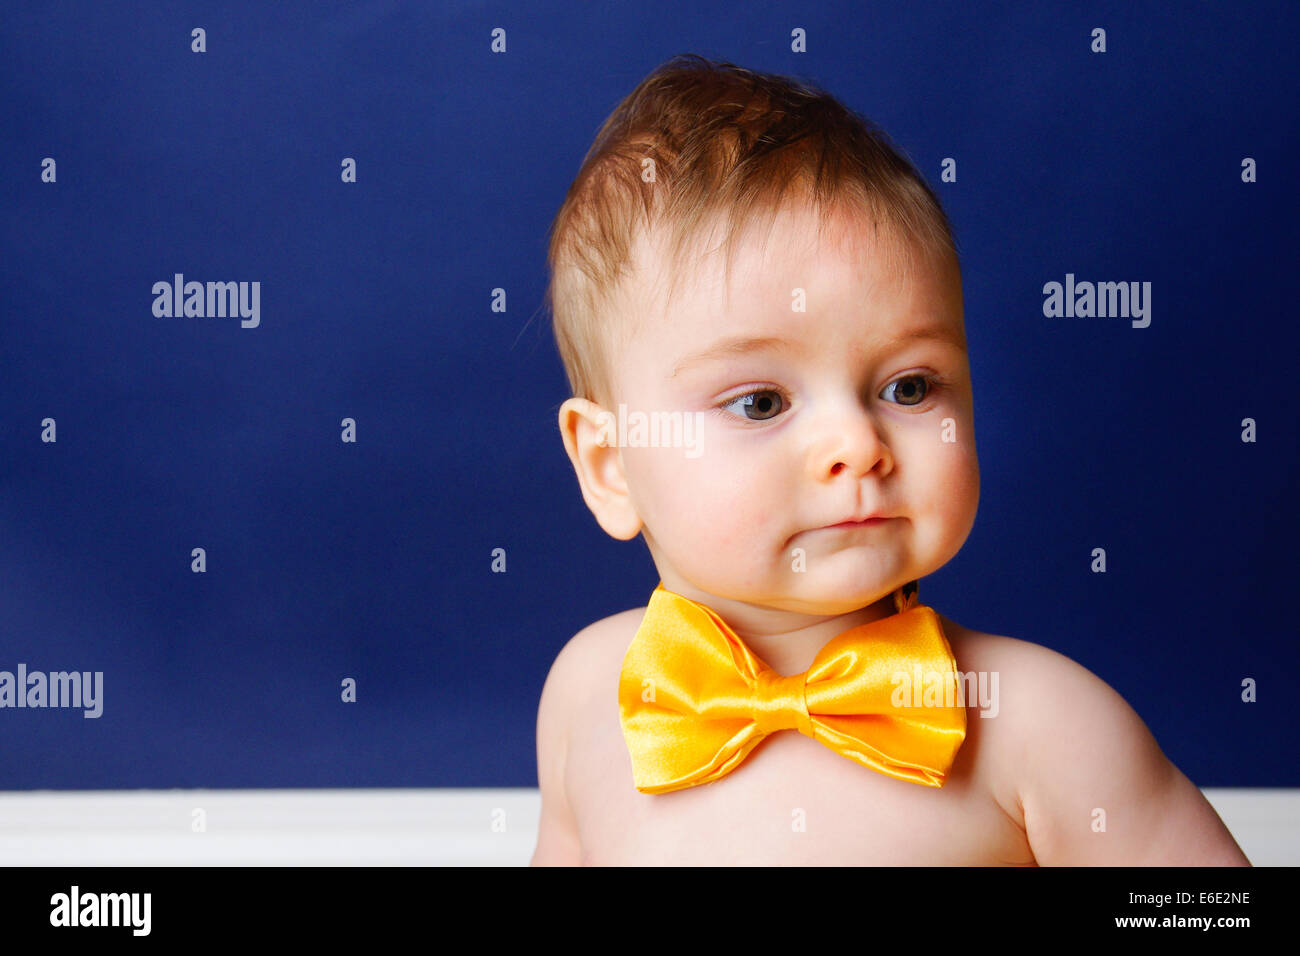 Un bébé de 9 mois garçon dans un noeud papillon jaune Banque D'Images